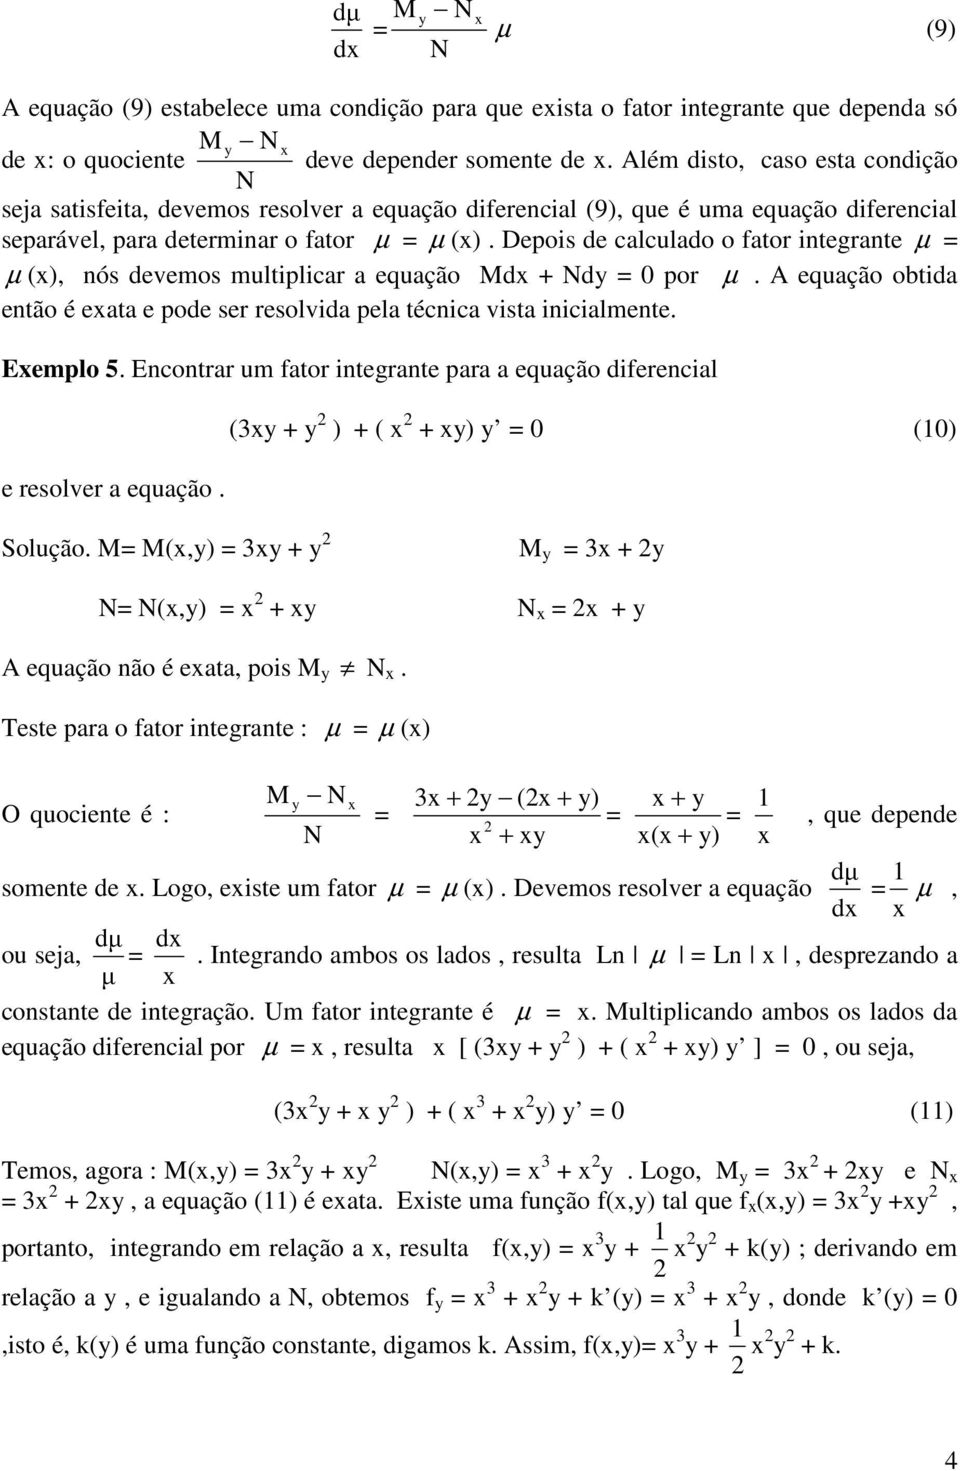 Depois de calculado o fator integrante µ = µ (x), nós devemos multiplicar a equação dx + Nd = 0 por µ. A equação obtida então é exata e pode ser resolvida pela técnica vista inicialmente. Exemplo 5.